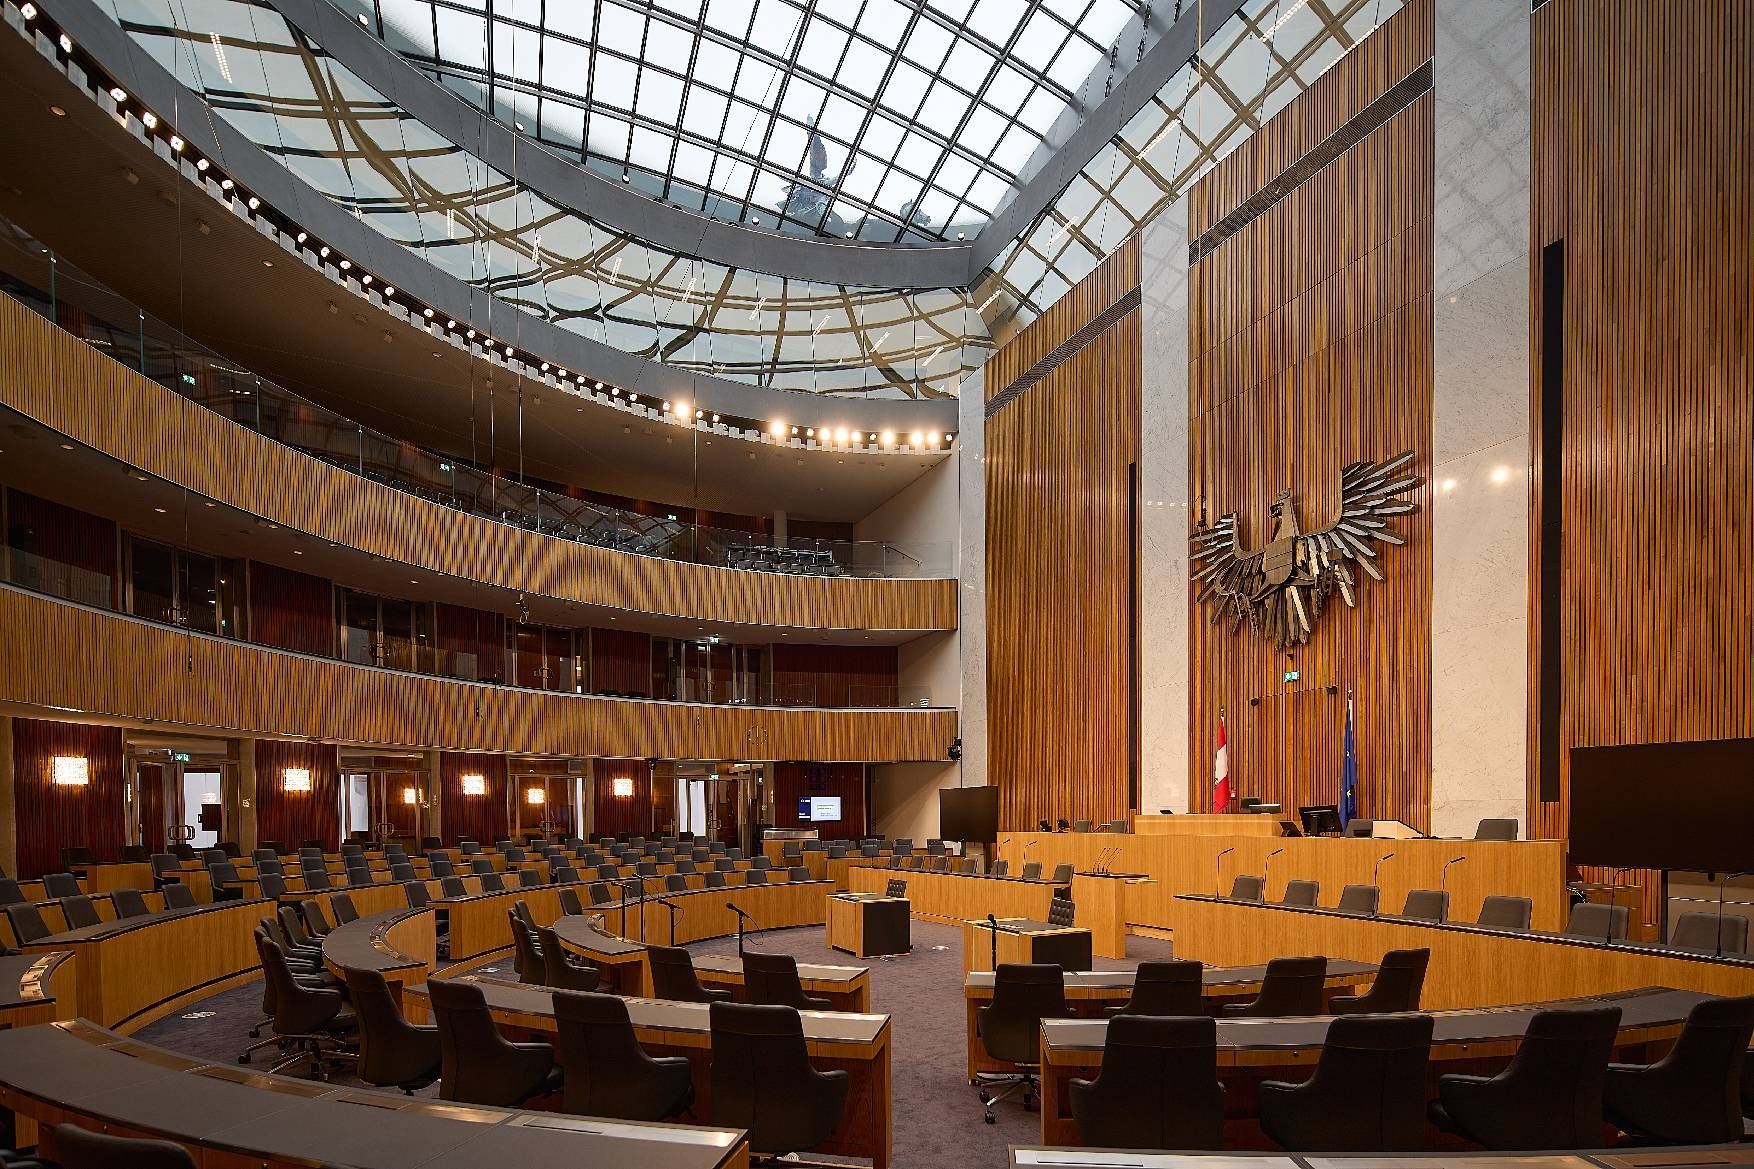 Sedus stattet österreichisches Parlament mit „silent rush“ aus